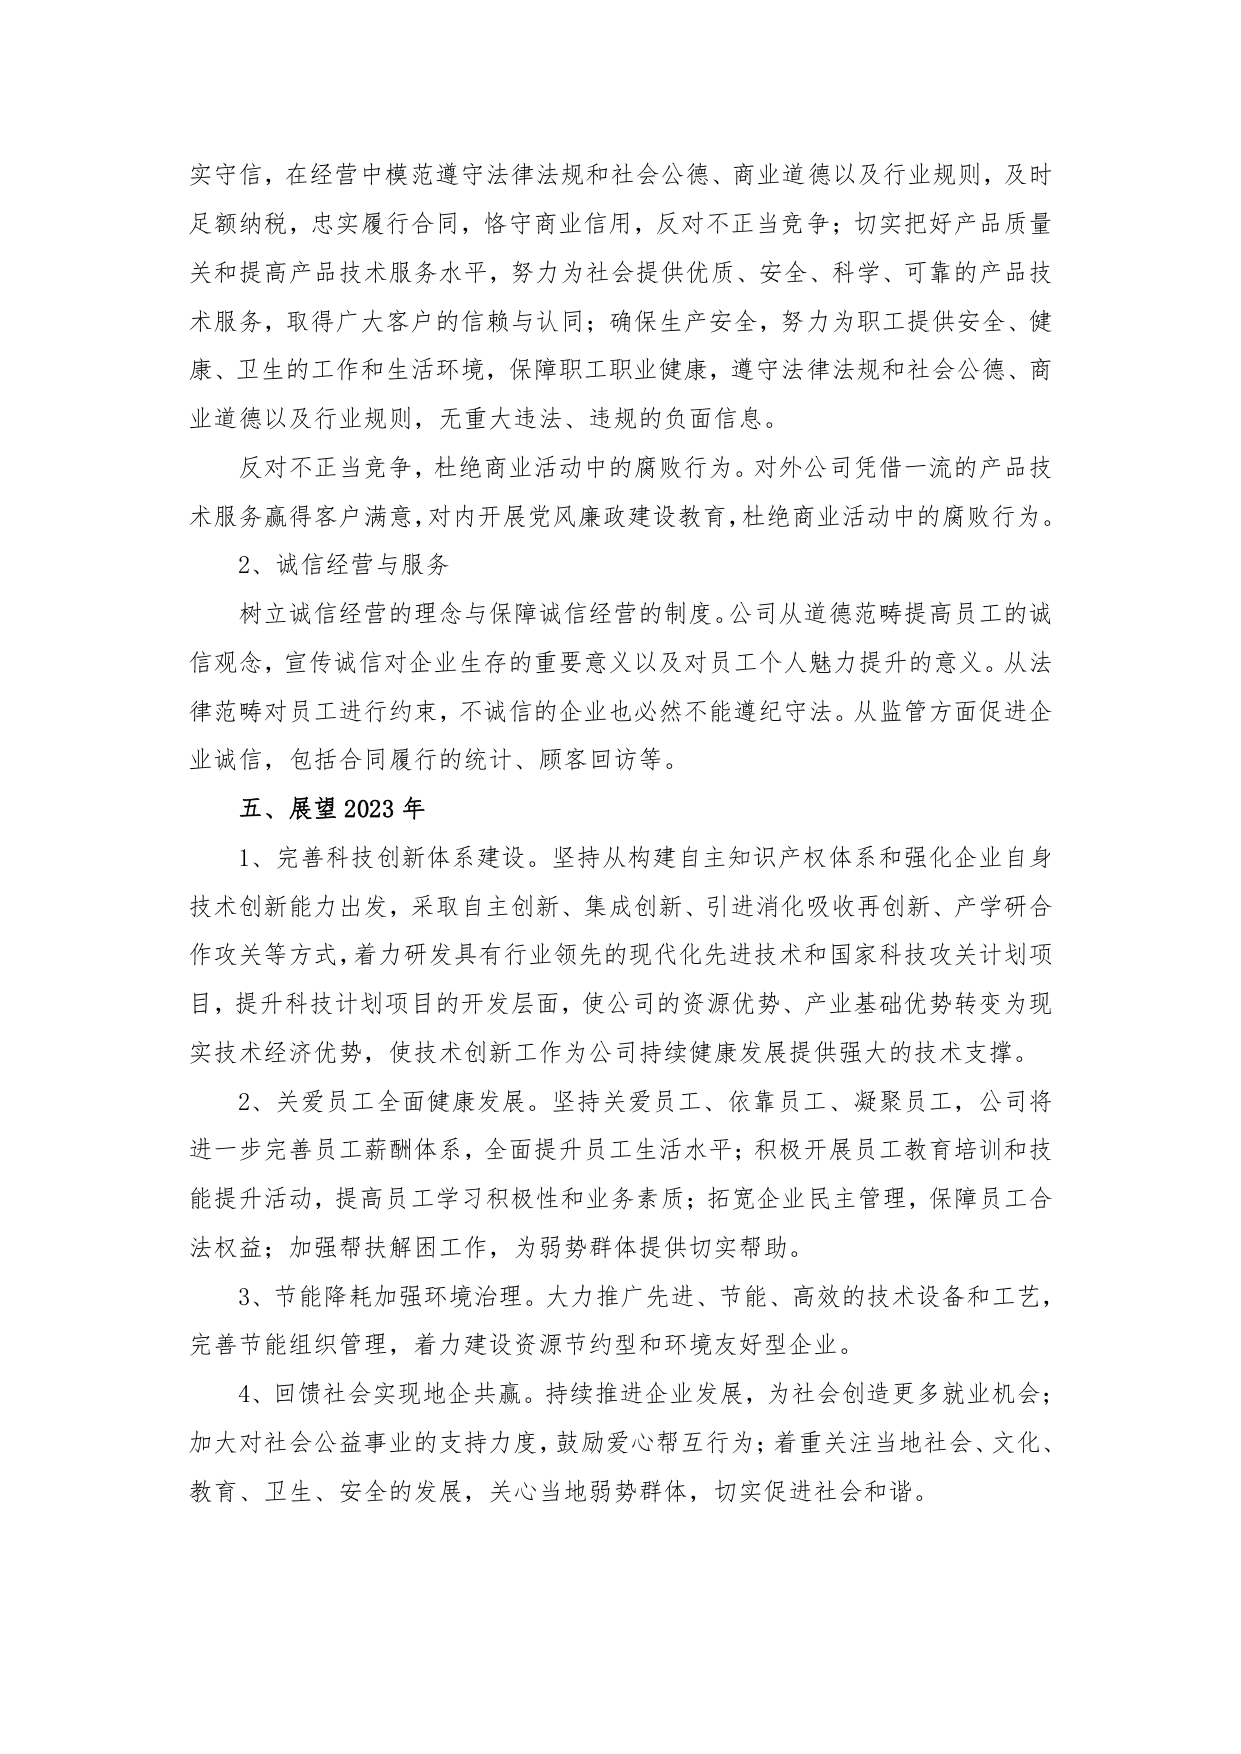 佰汇电缆2022年度社会责任报告_page-0003.jpg